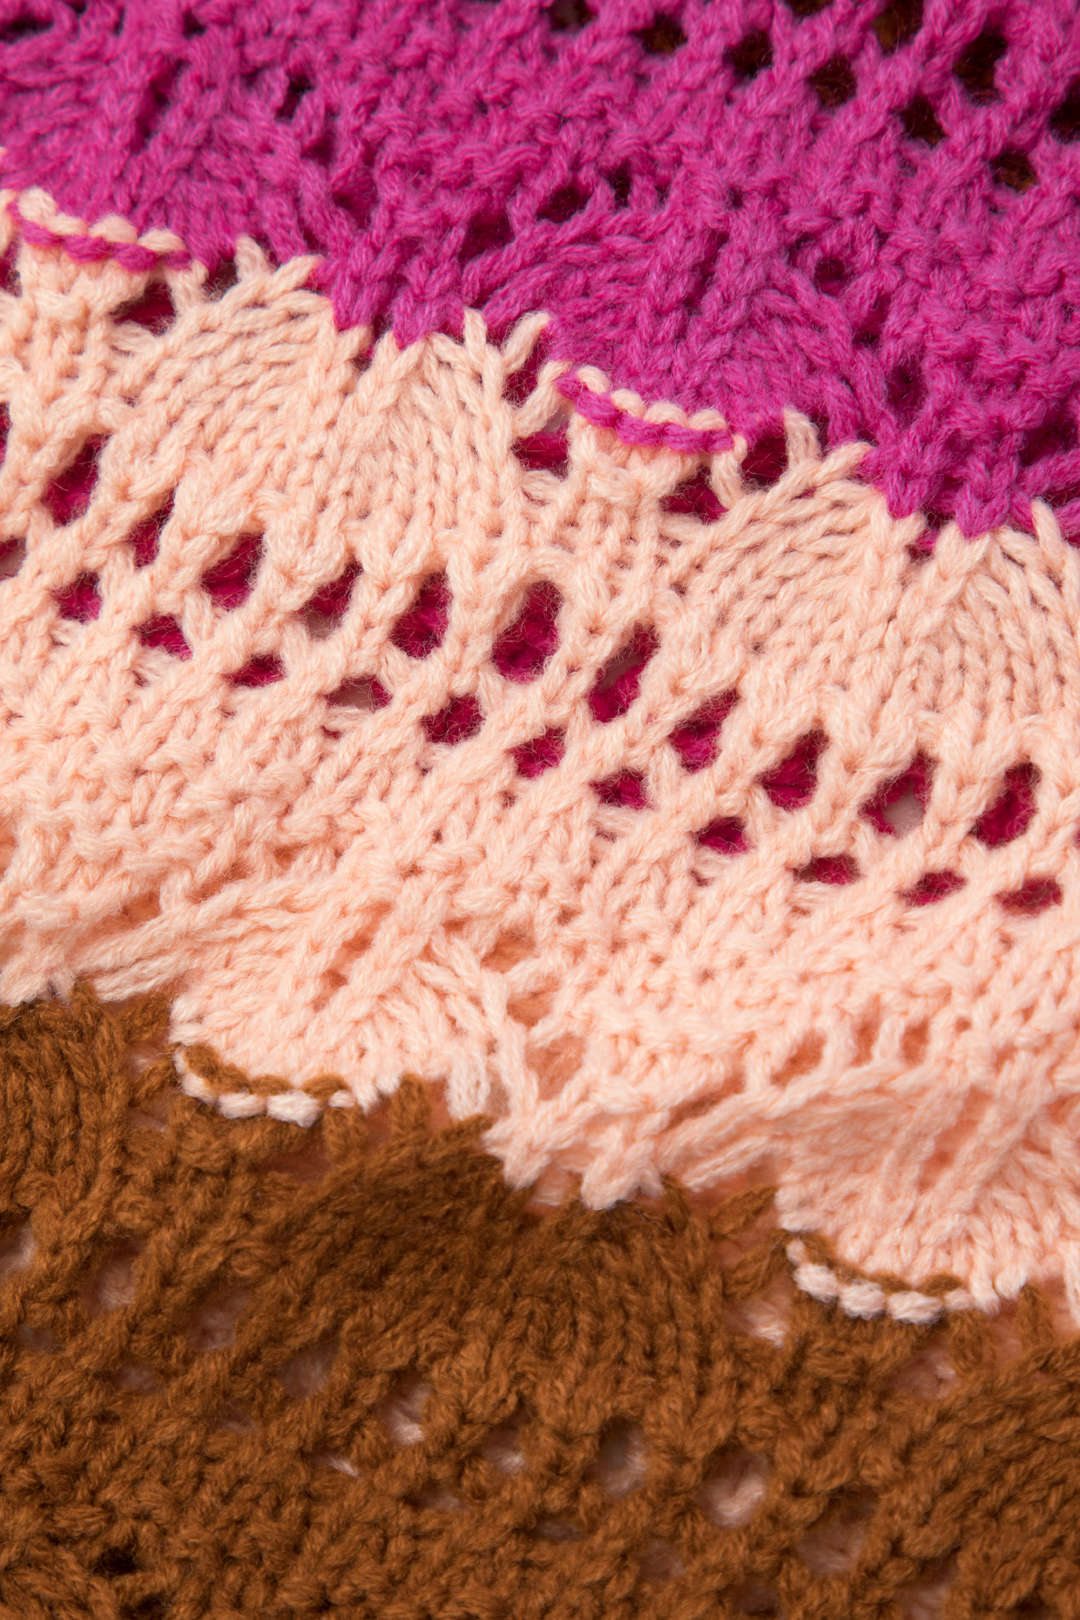 Multicolored Stripe Crochet V-neck Knit Top